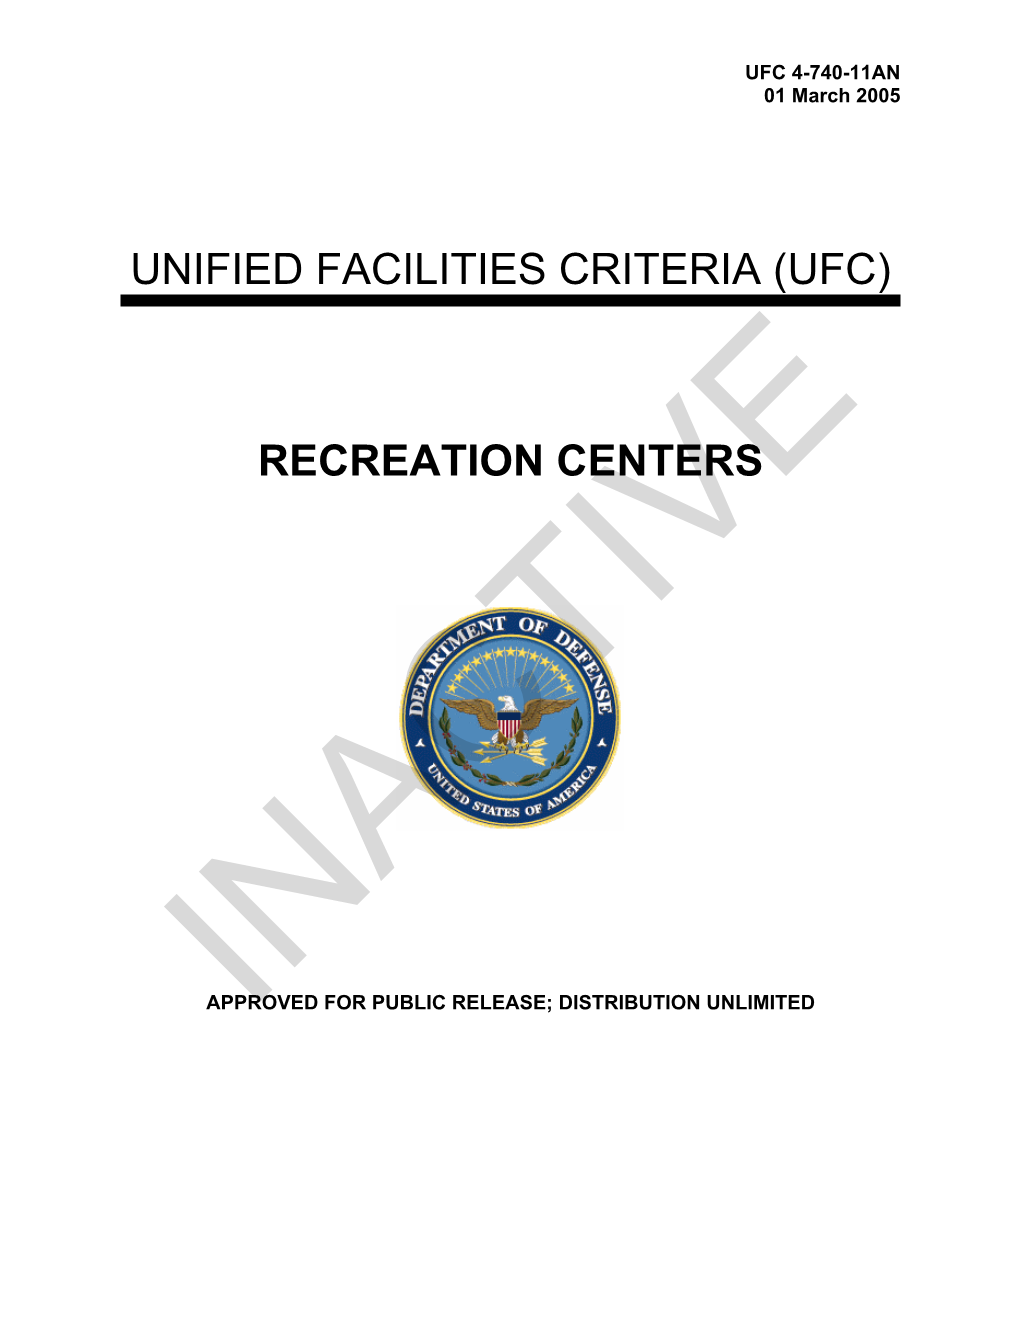 UFC 4-740-11AN Recreation Centers